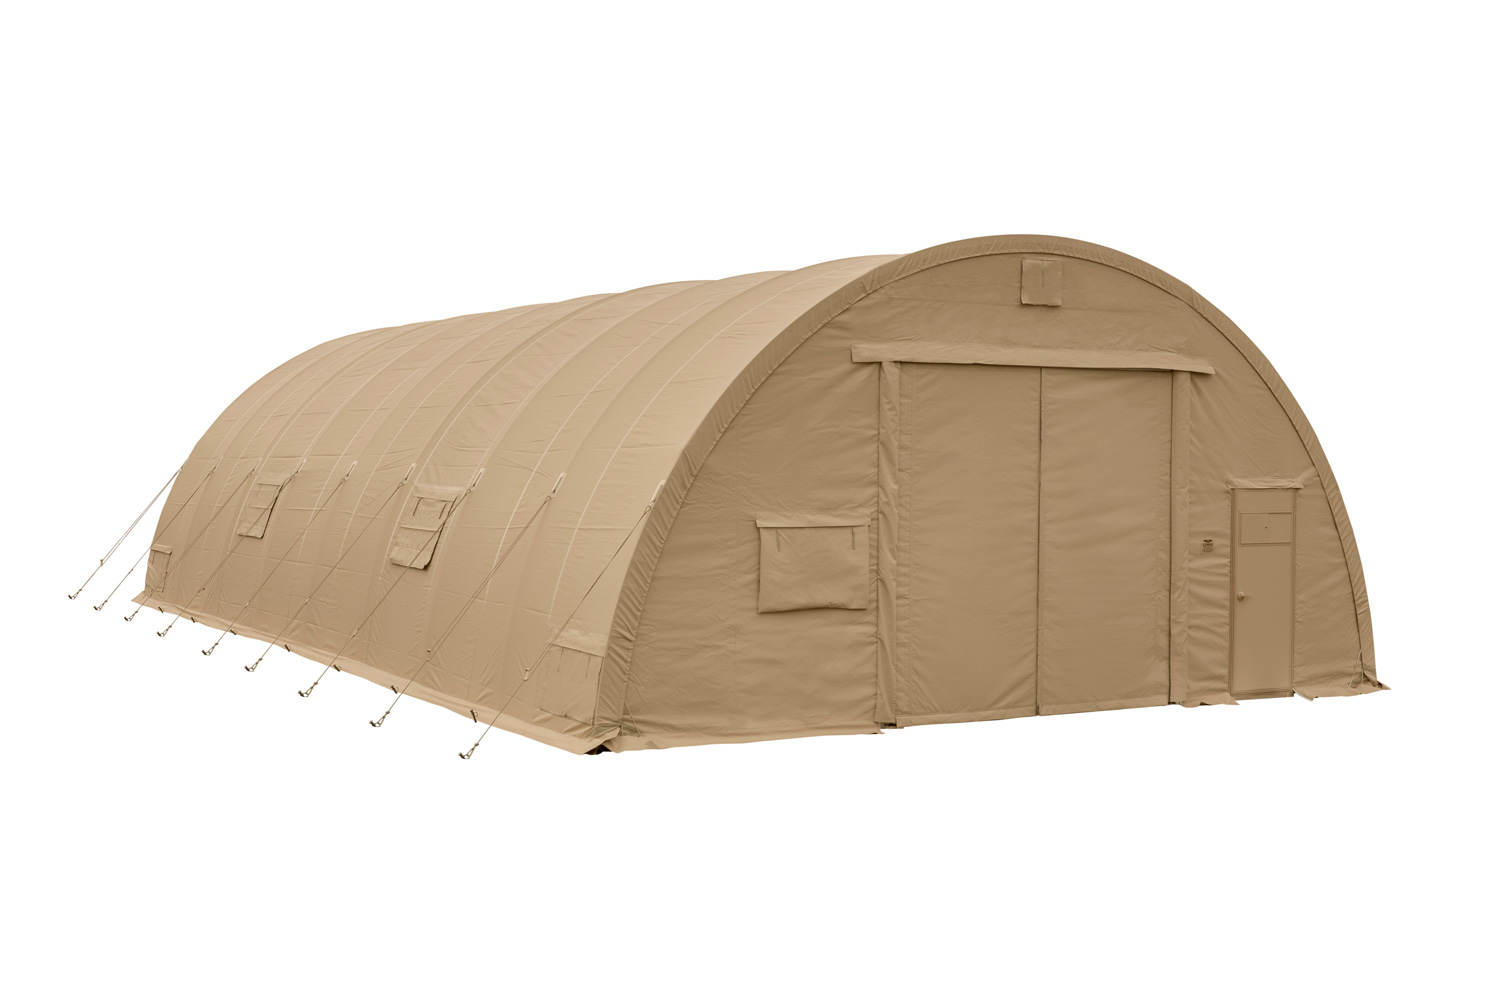 CAMSS: Tan CAMSS30 California Medium Military Shelter System